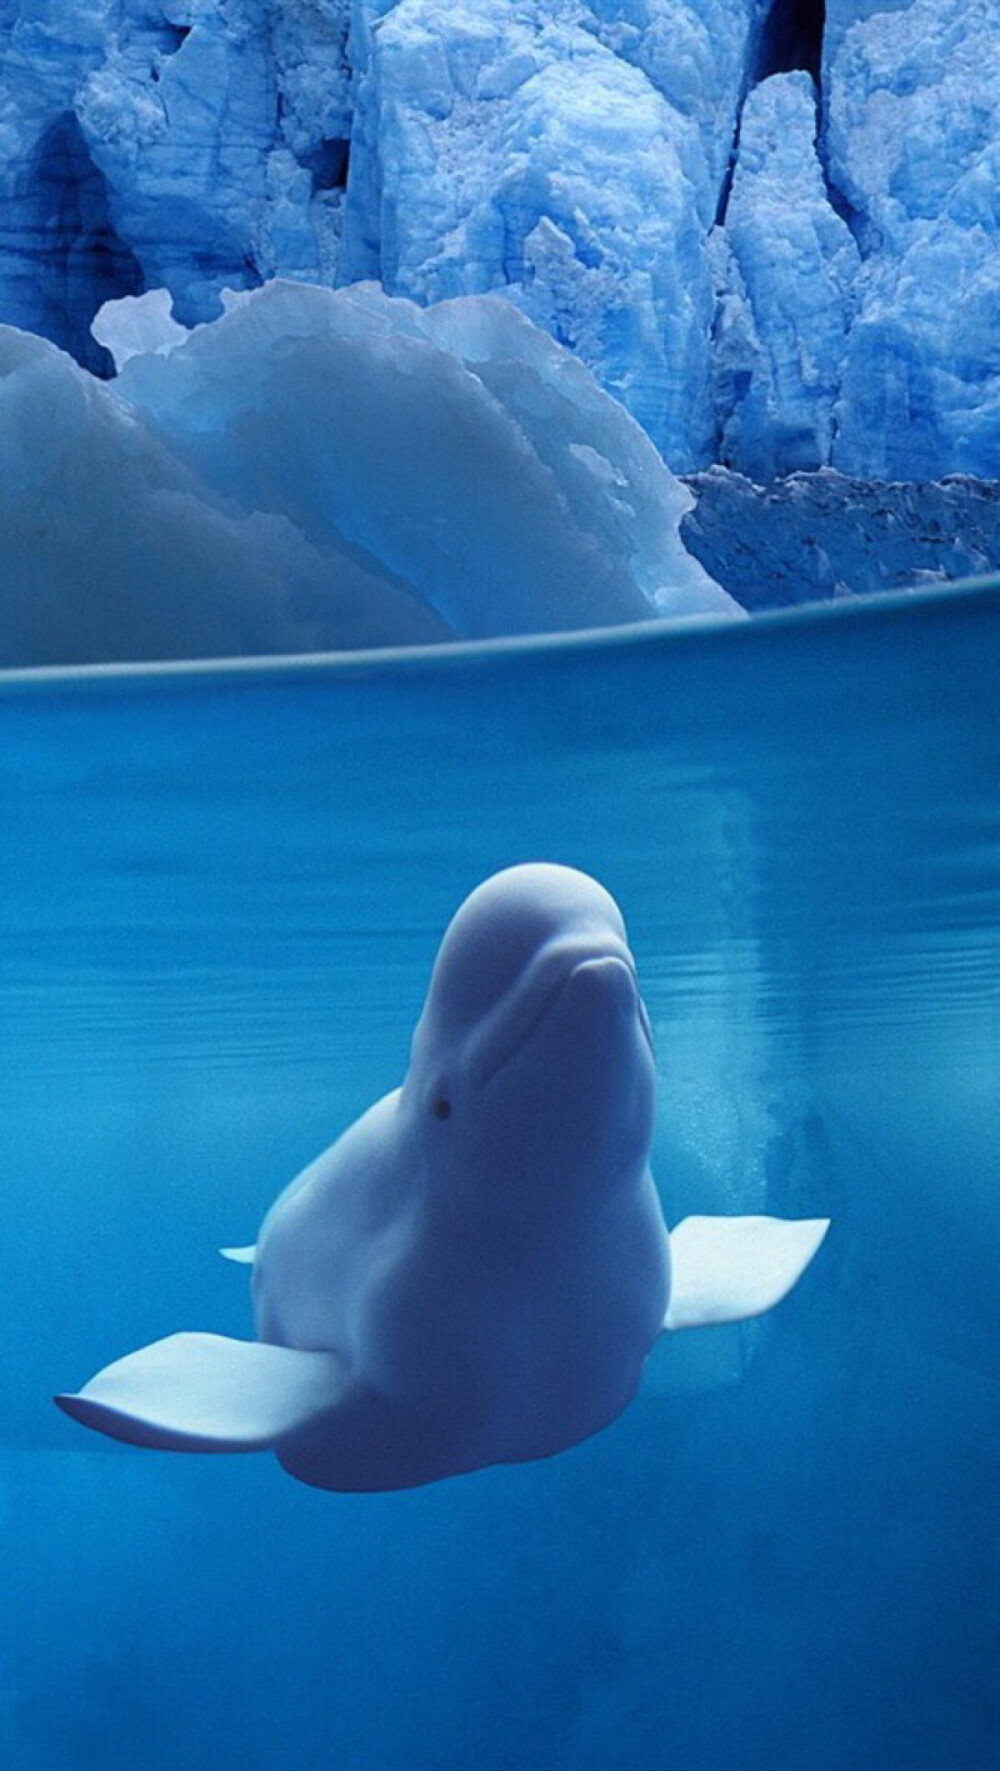 第一条:发一张我最爱的白鲸 